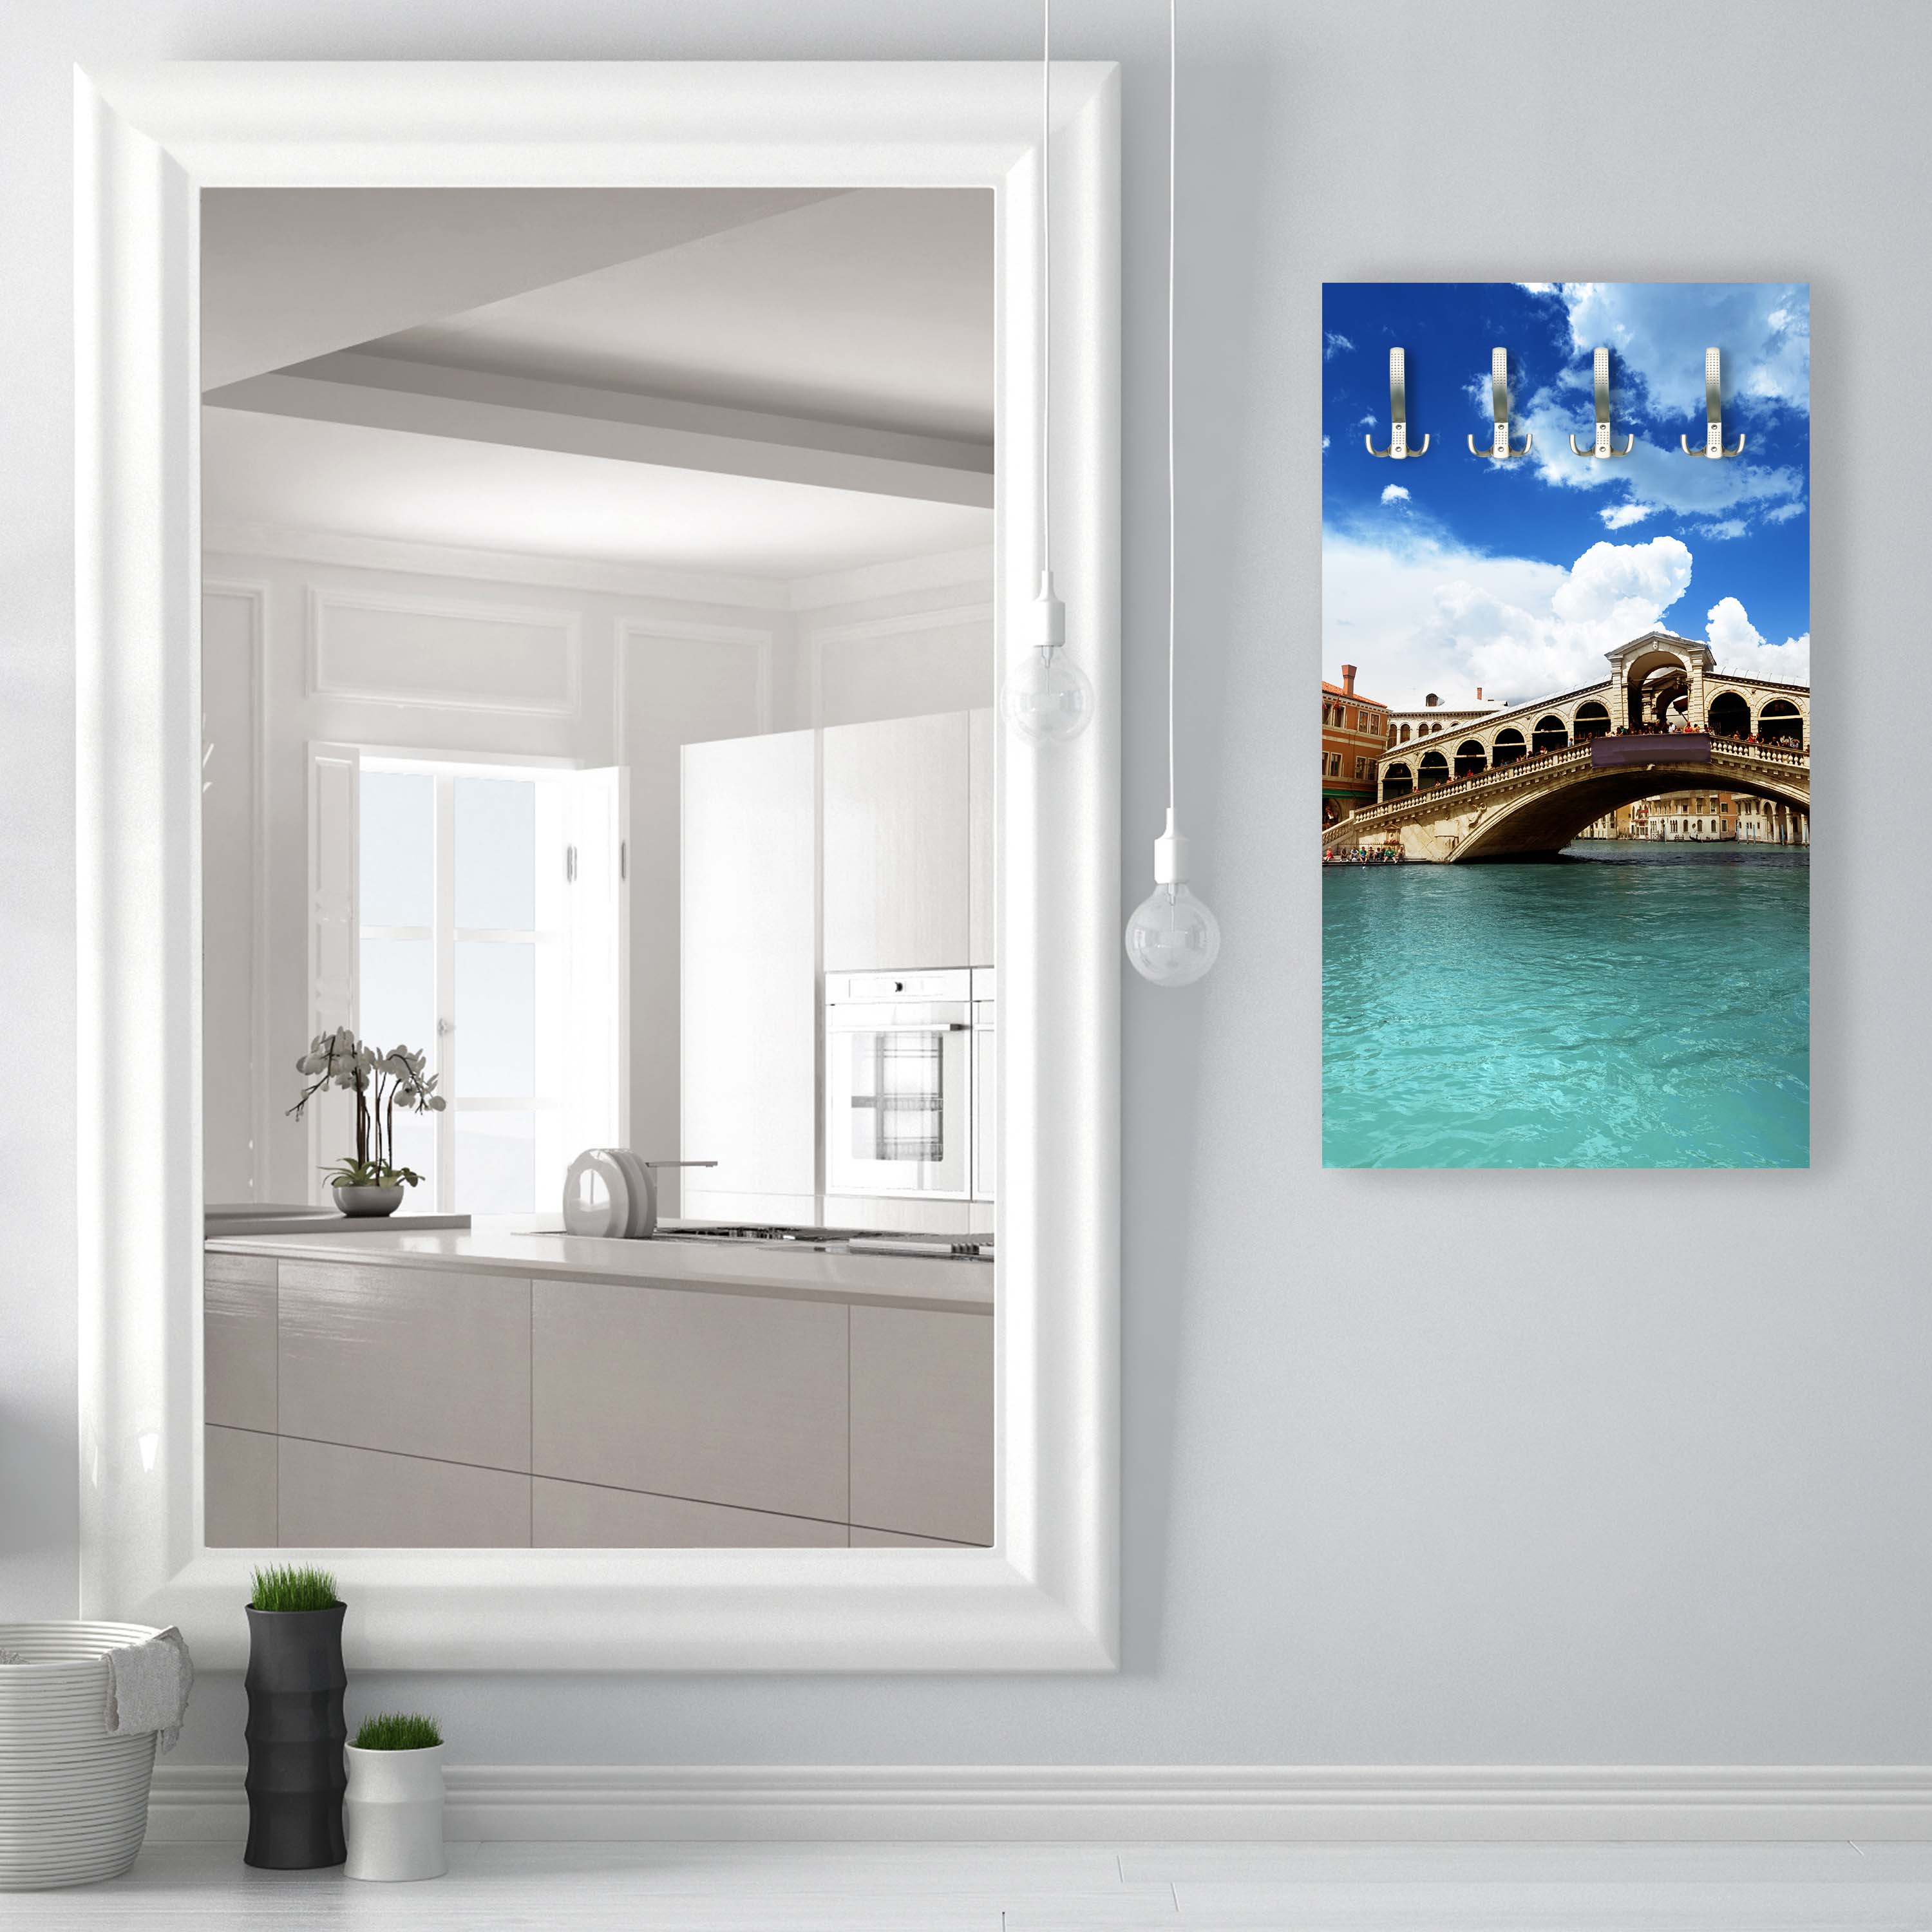 Garderobe Rialtobrücke Venedig M0298 entdecken - Bild 3